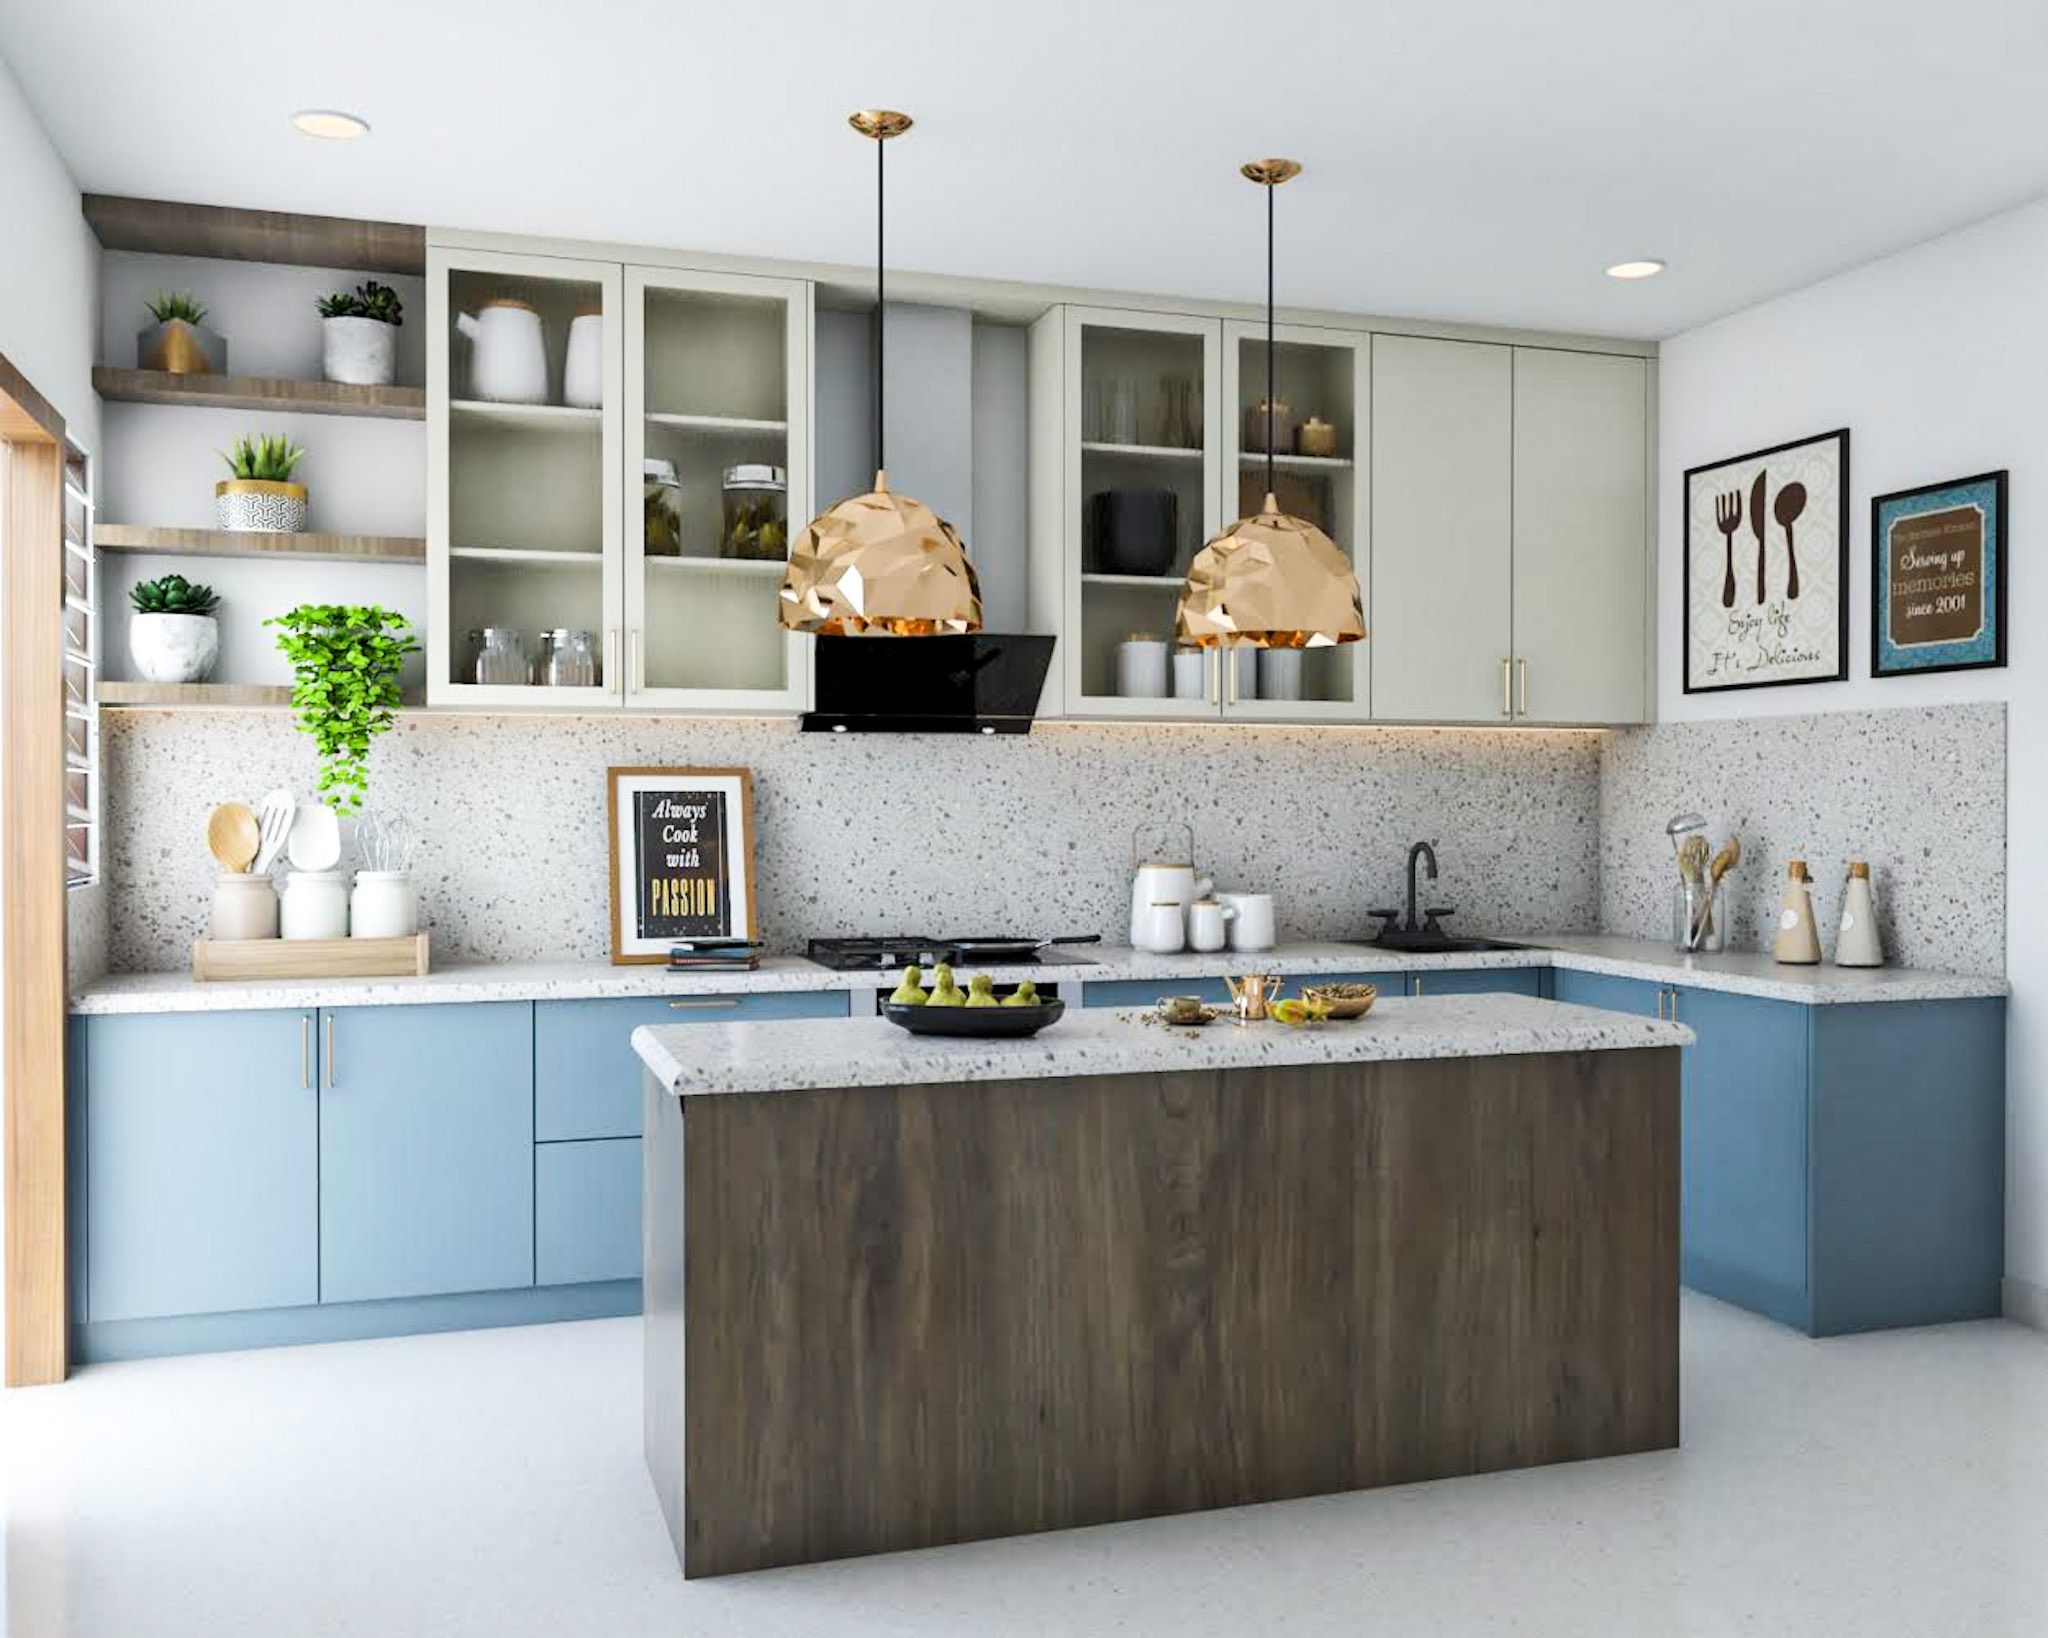 hdb kitchen designs | modern kitchen interior design ideas in